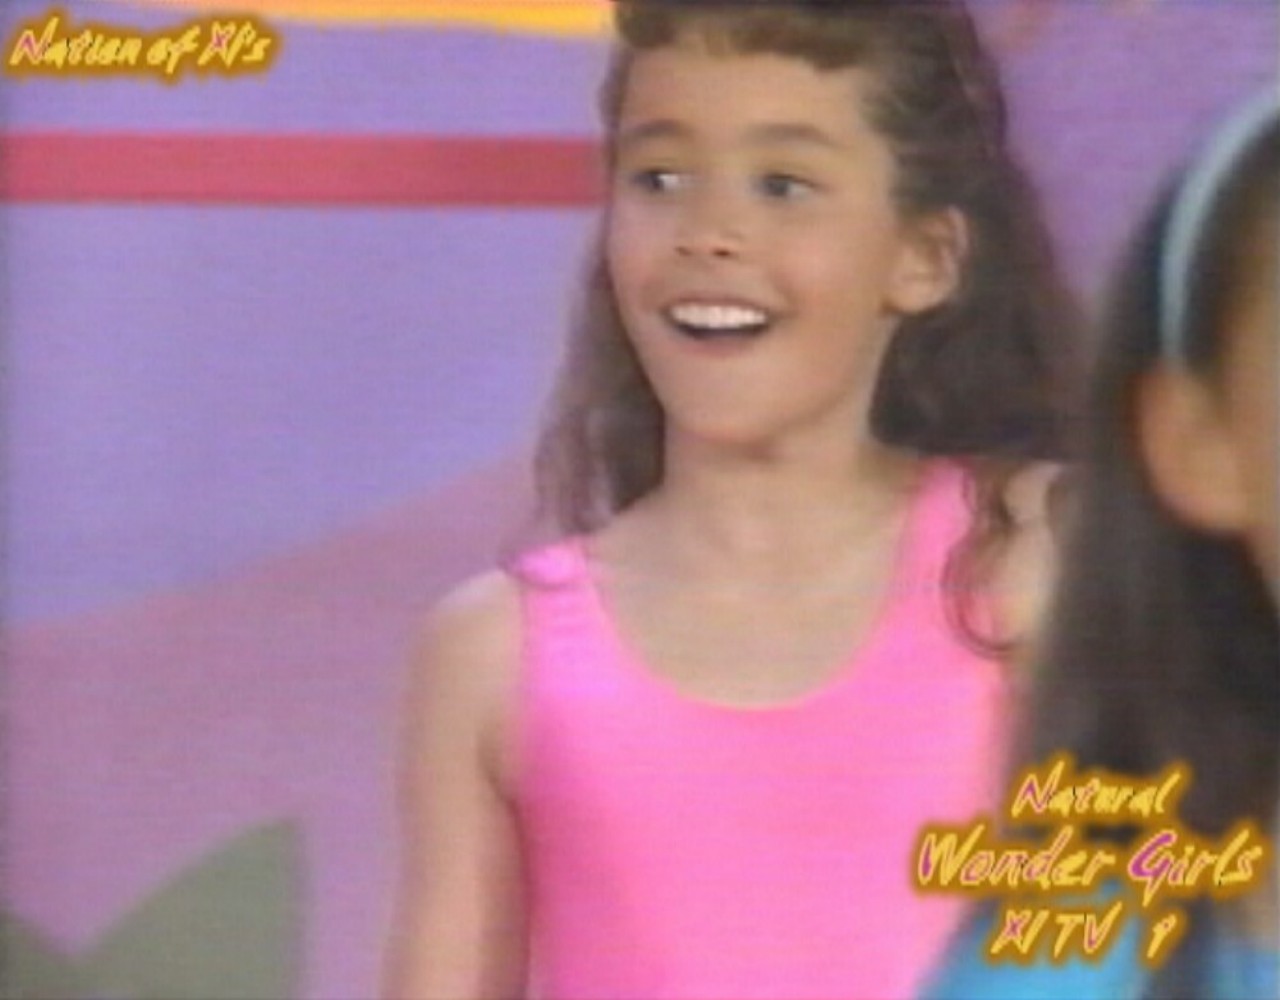 Natural Wonder Girls! Dance Workout! "Barbie Gets Nine Inch Nailed!" - Ashlee Turner! 